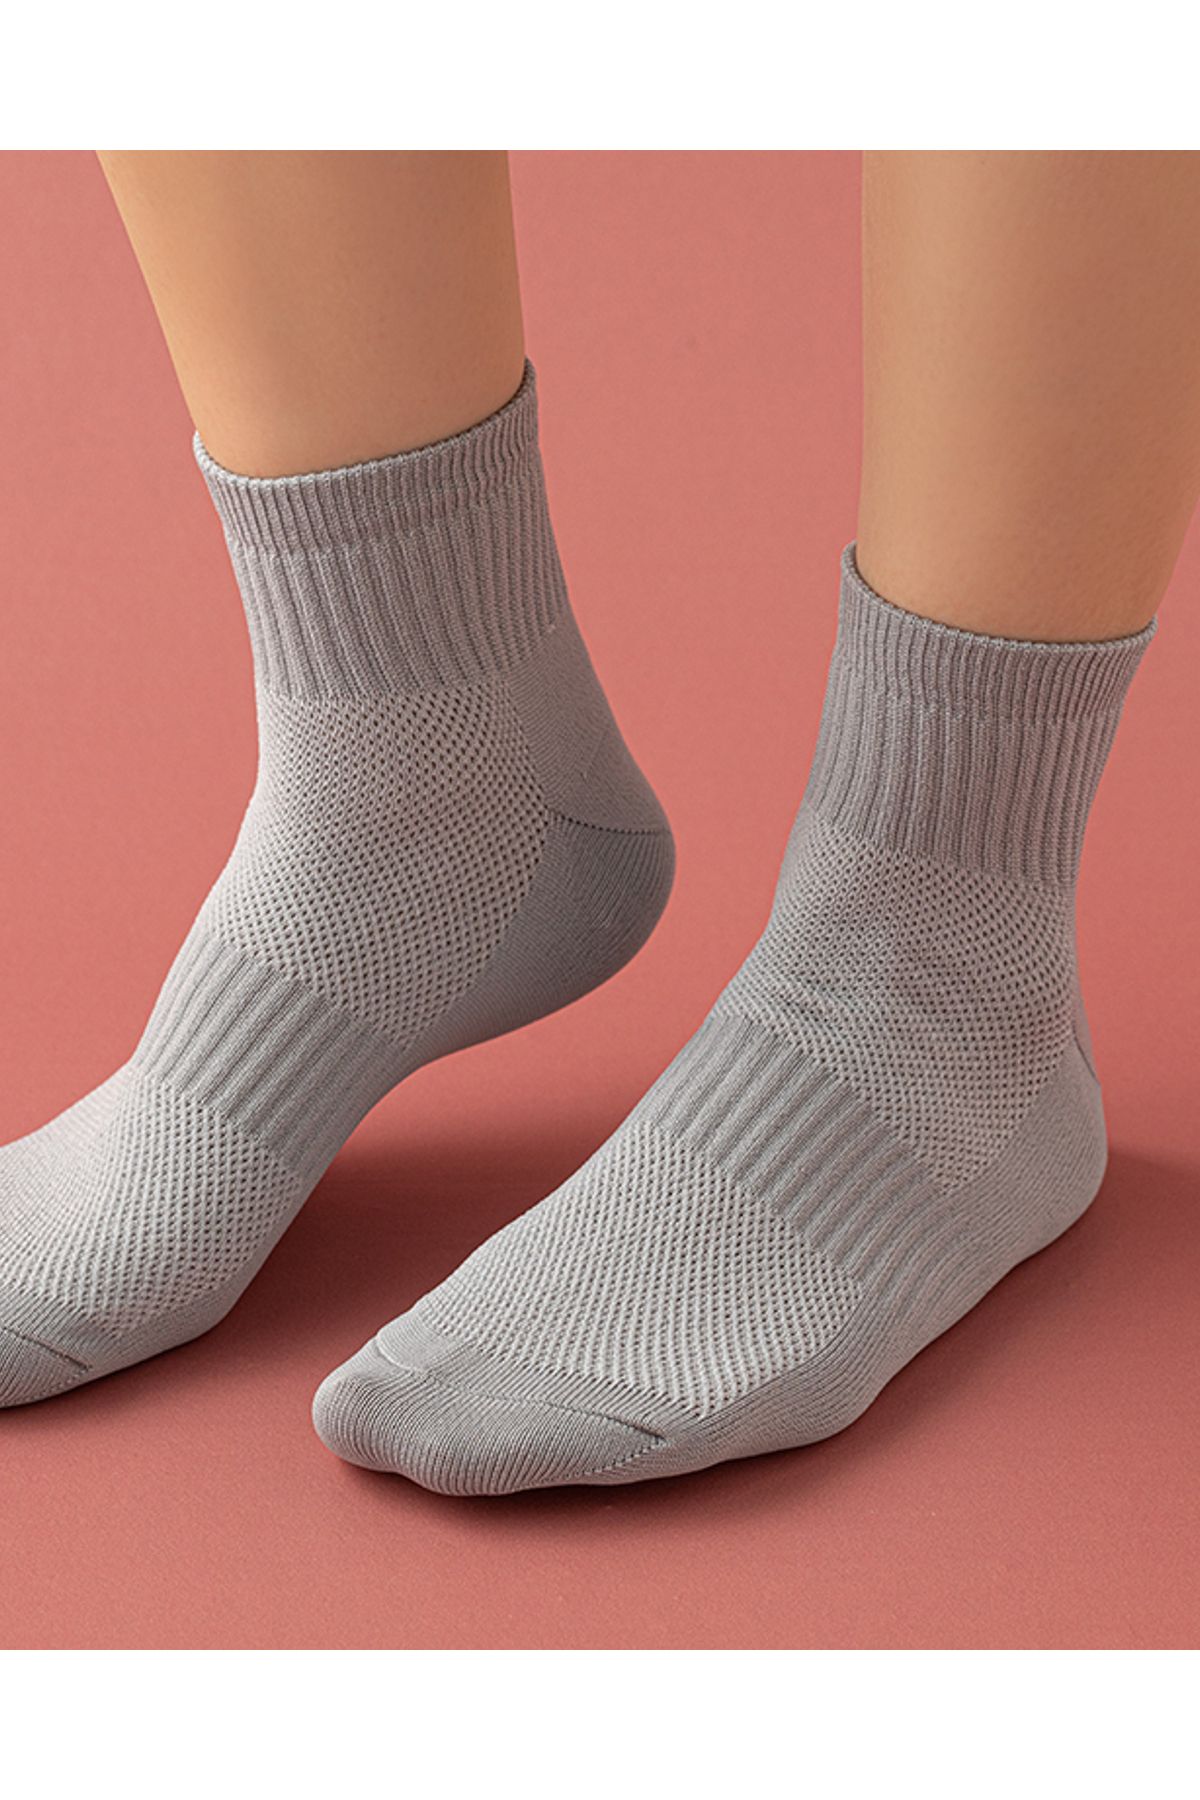 English Home Tery Kadın 3'lü Spor Çorap Siyah-beyaz-gri